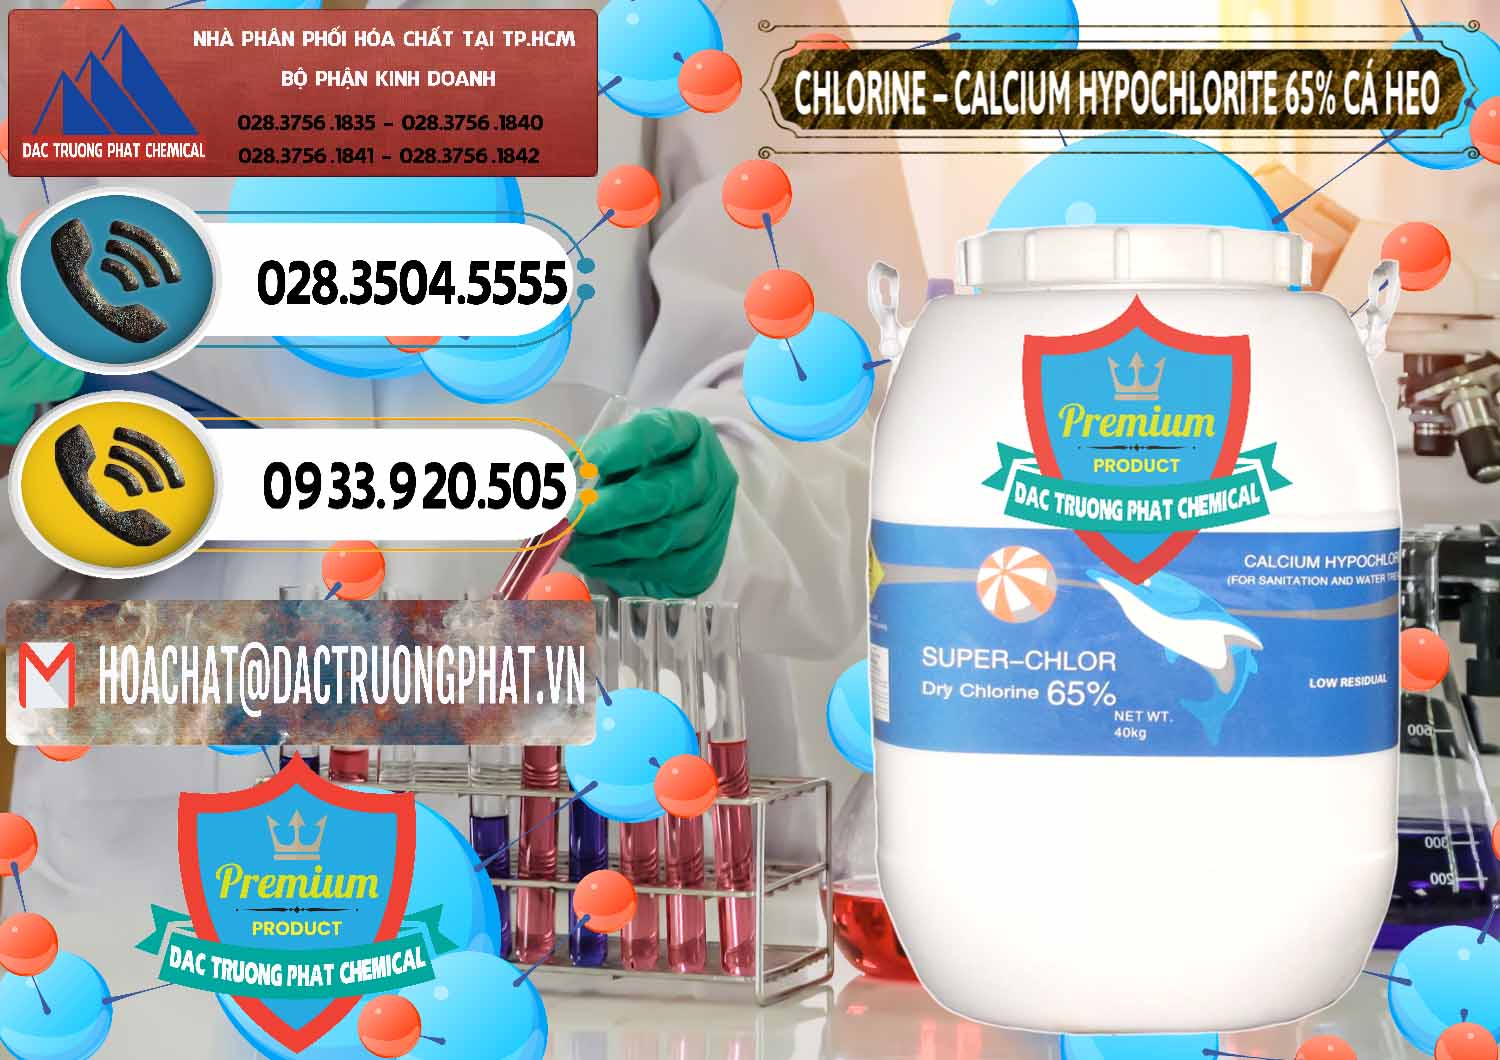 Cung ứng _ bán Clorin - Chlorine Cá Heo 65% Trung Quốc China - 0053 - Cty chuyên cung cấp và nhập khẩu hóa chất tại TP.HCM - hoachatdetnhuom.vn